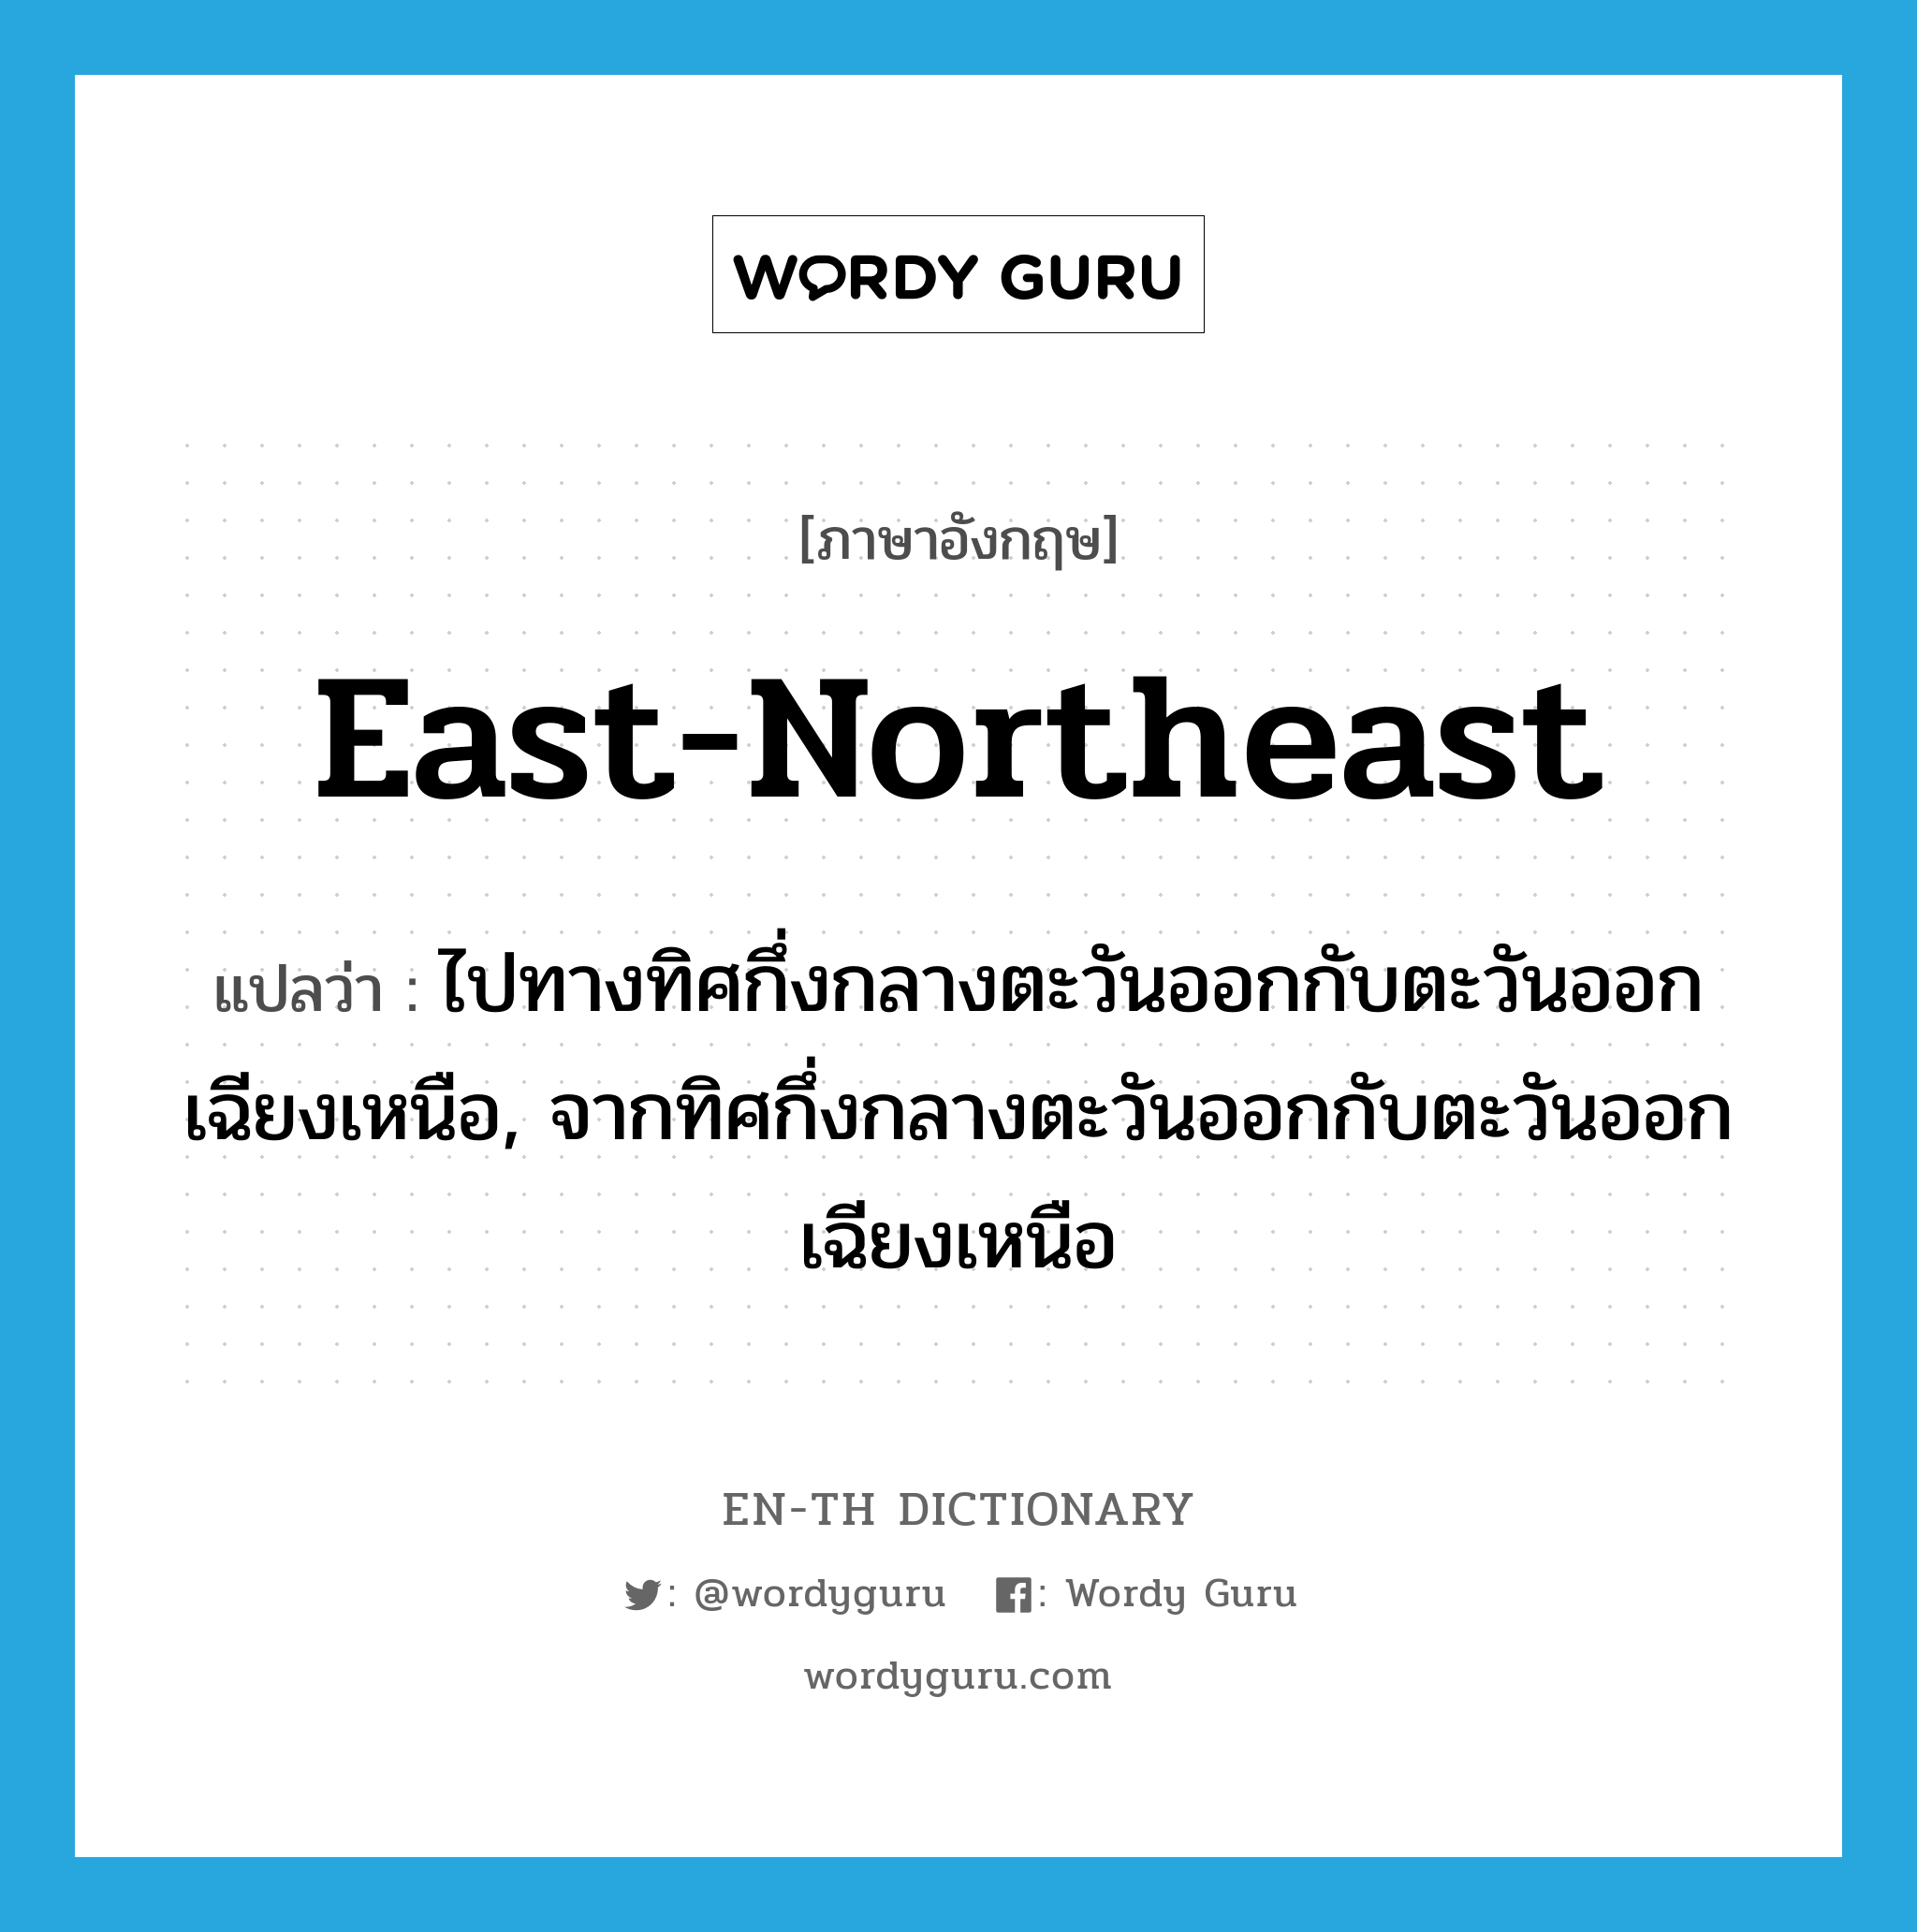 east-northeast แปลว่า?, คำศัพท์ภาษาอังกฤษ east-northeast แปลว่า ไปทางทิศกึ่งกลางตะวันออกกับตะวันออกเฉียงเหนือ, จากทิศกึ่งกลางตะวันออกกับตะวันออกเฉียงเหนือ ประเภท ADJ หมวด ADJ